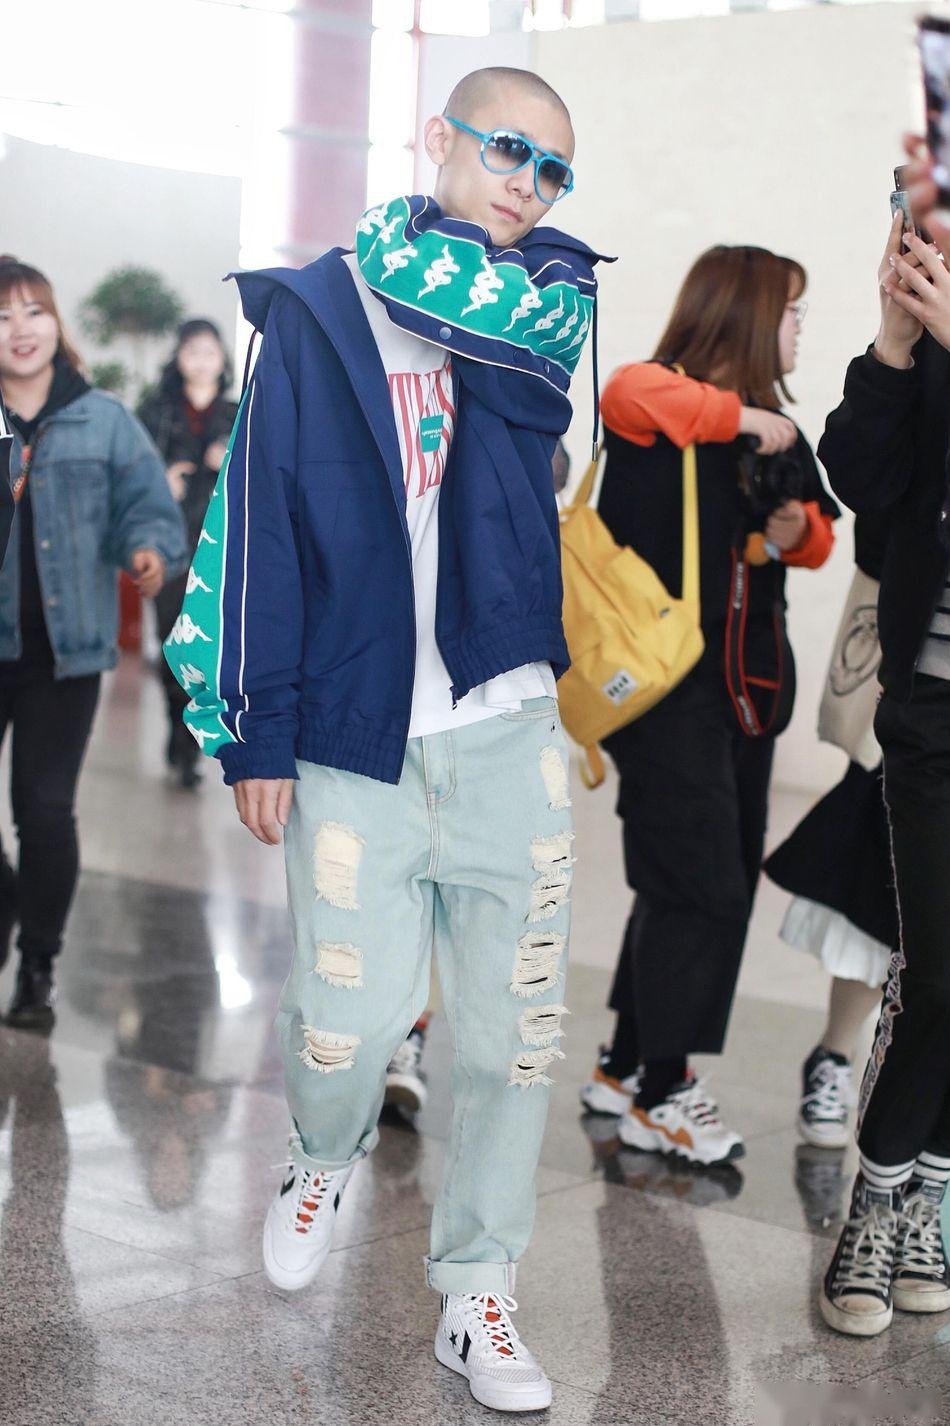 2019年4月20日,张一山现身北京机场,当天他身穿藏蓝色运动外套内搭